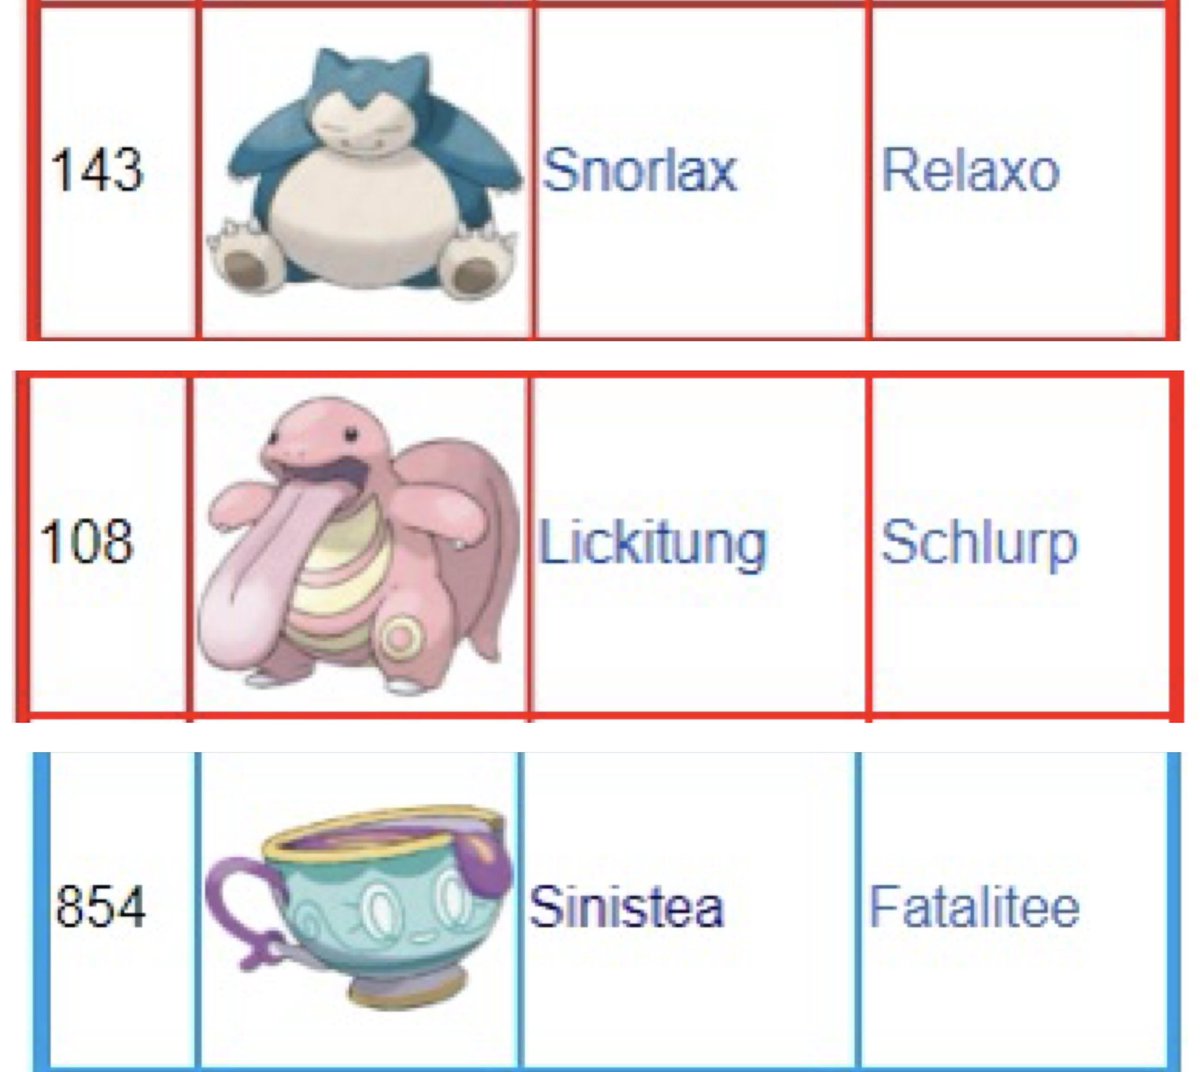 german pokemon names are so funny